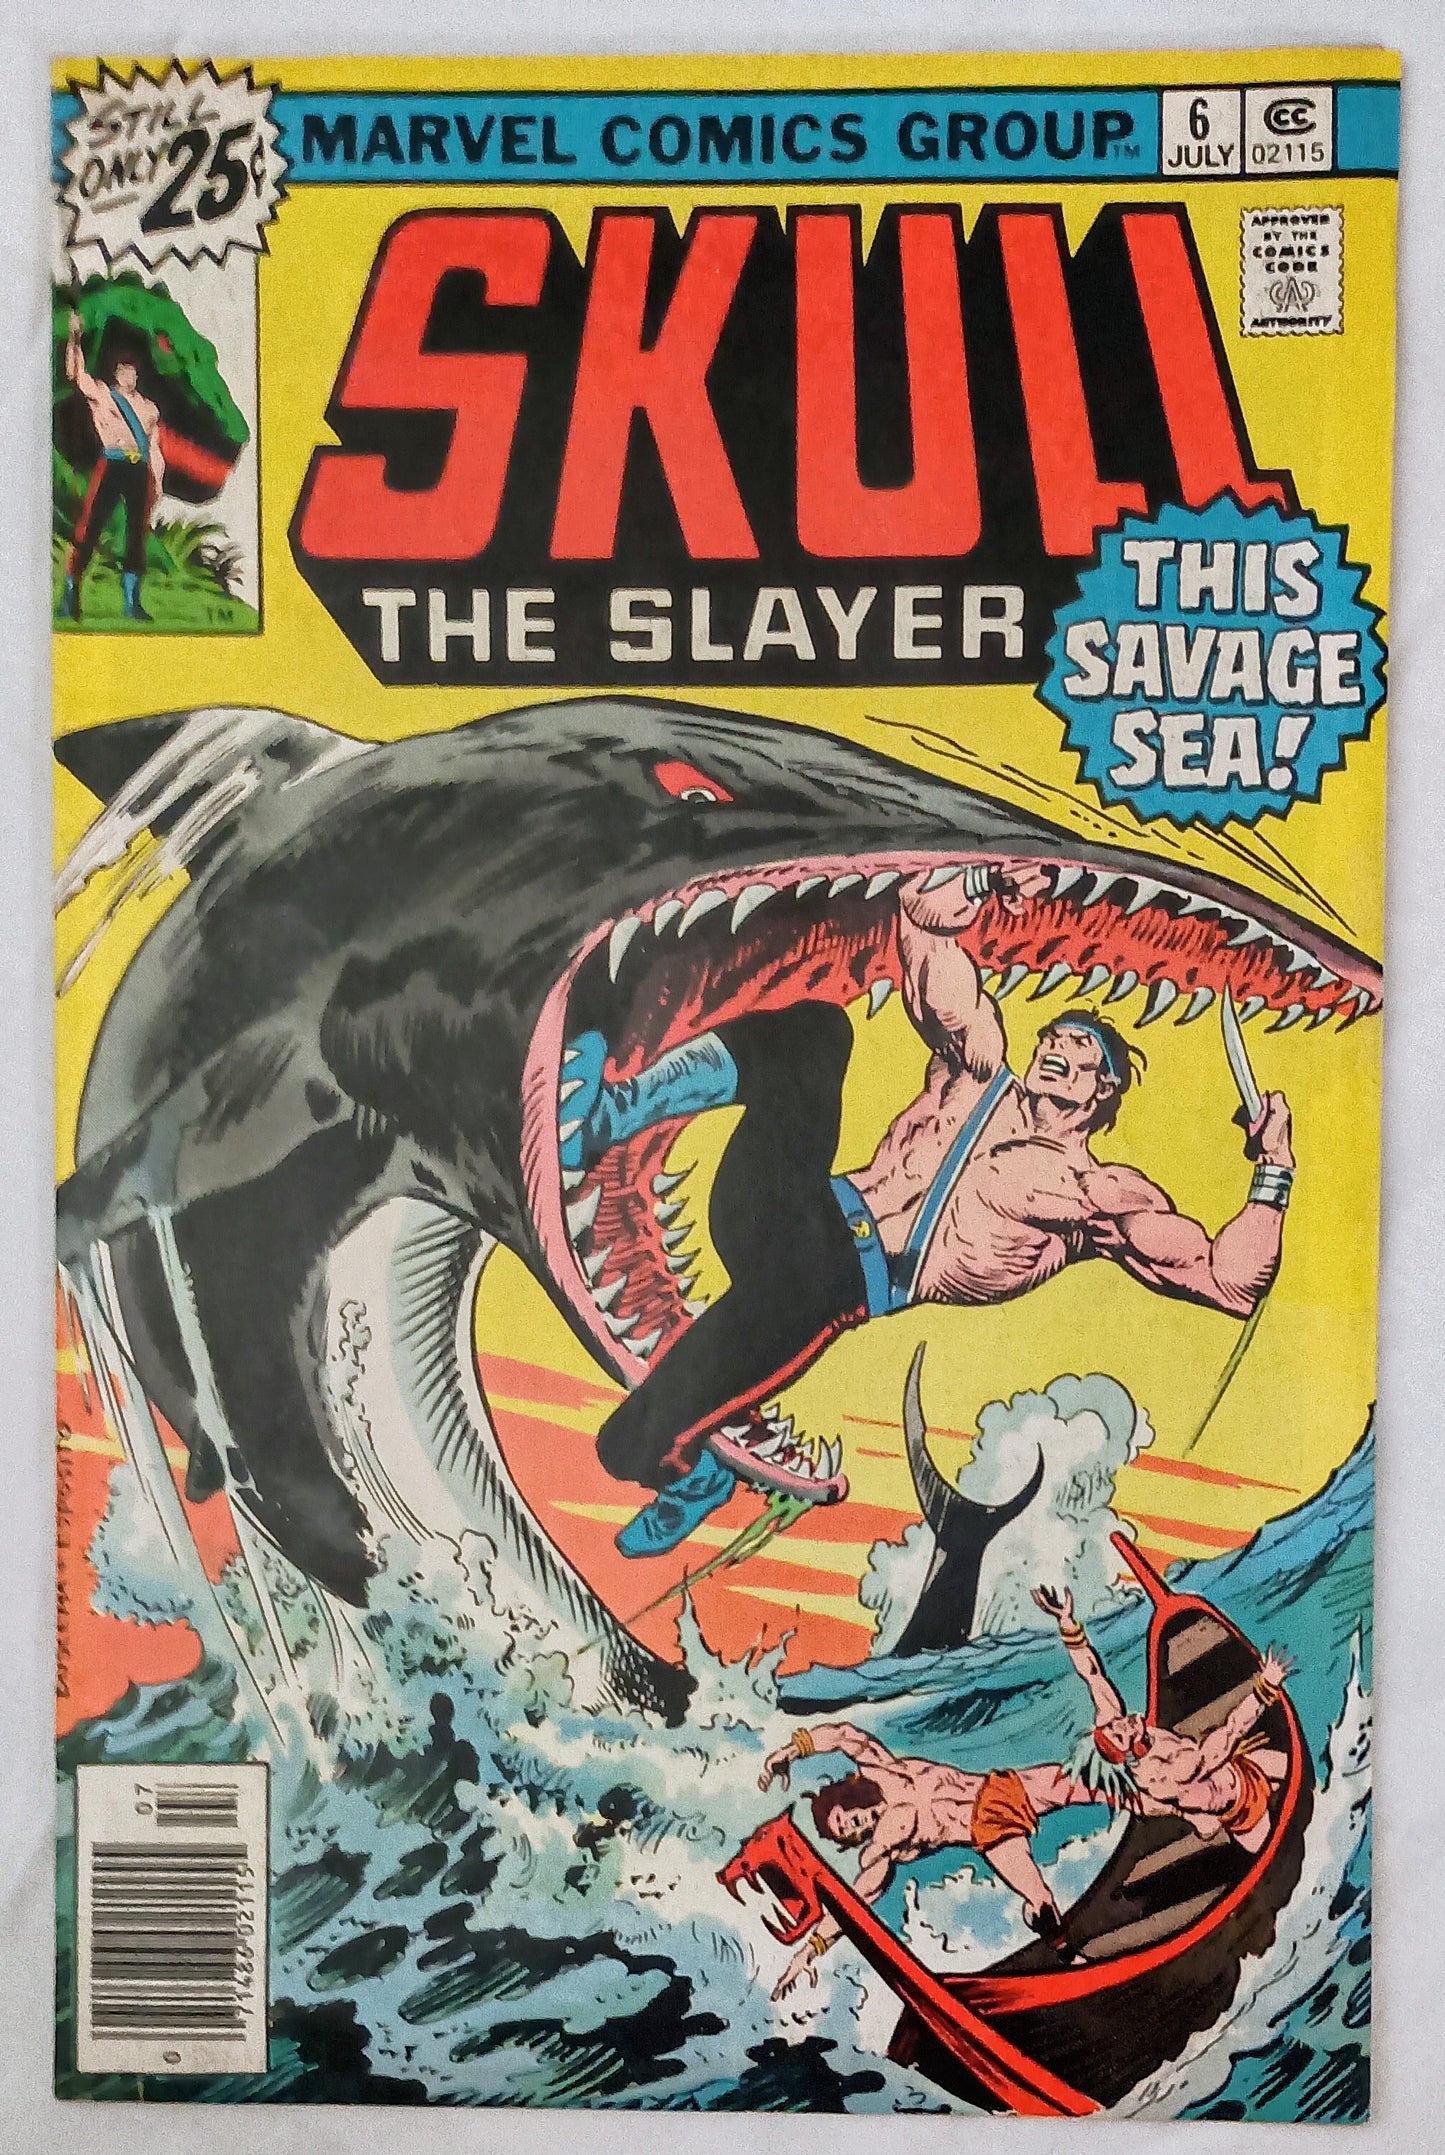 Marvel Comics Skull The Slayer #6